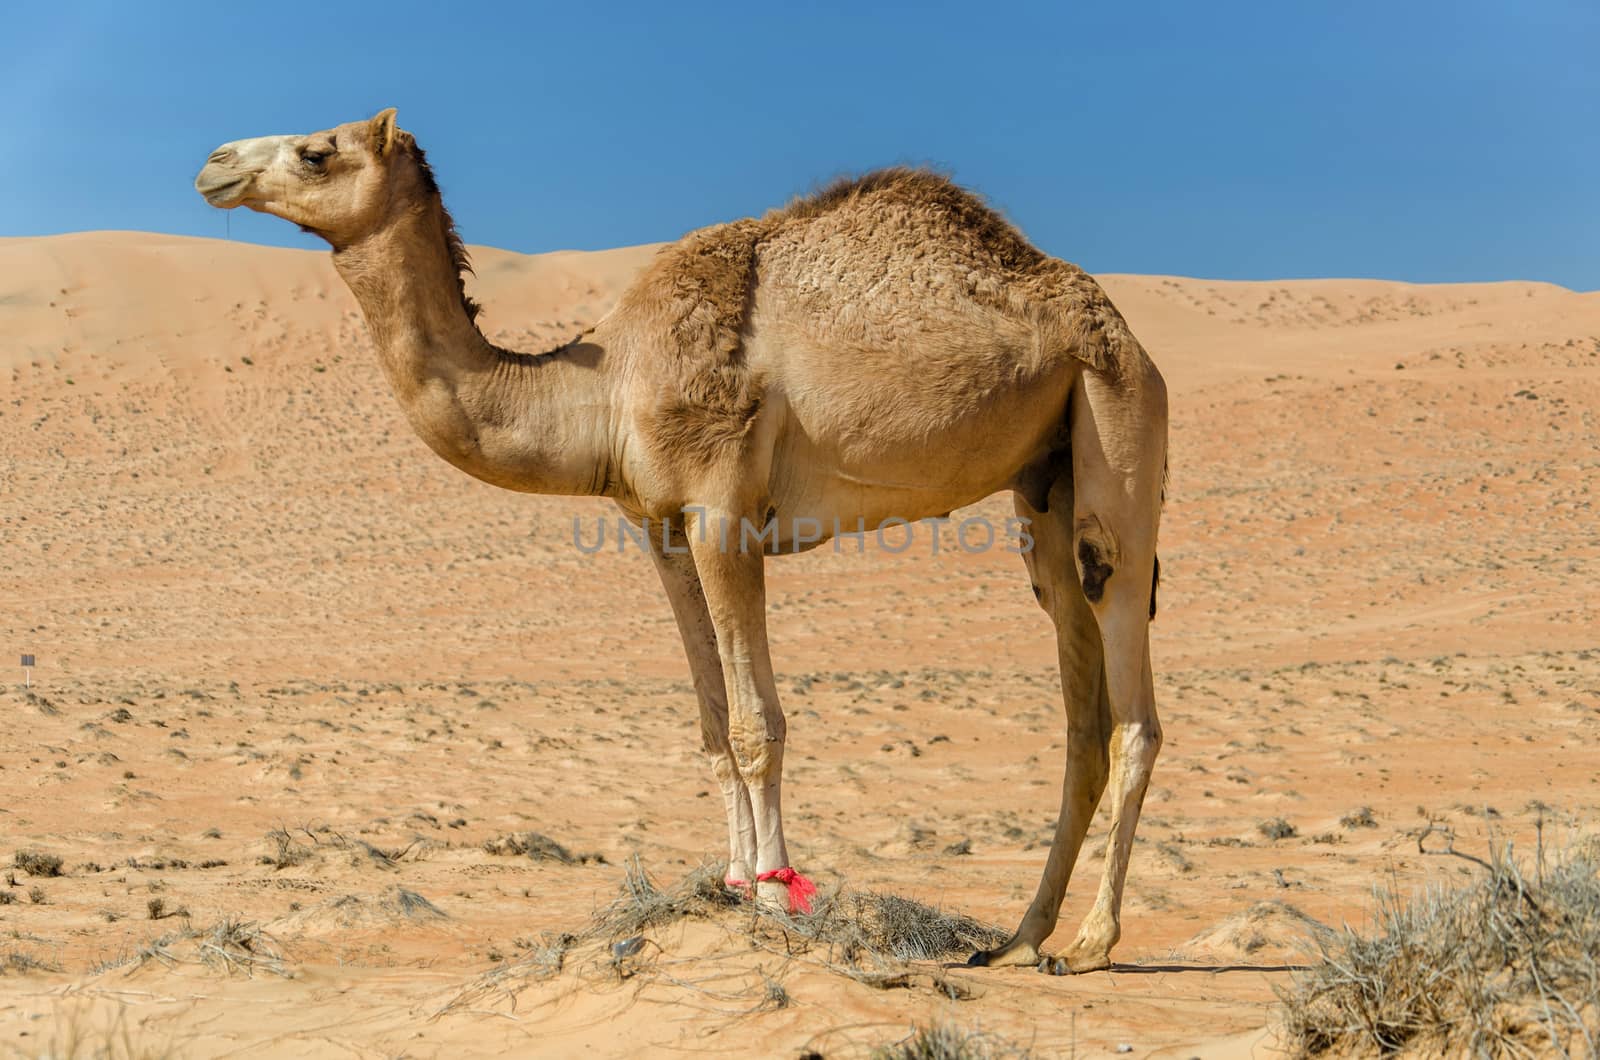 Taken in the Sharqiya Sands, Ash Sharqiyah Region, Sultanate of Oman